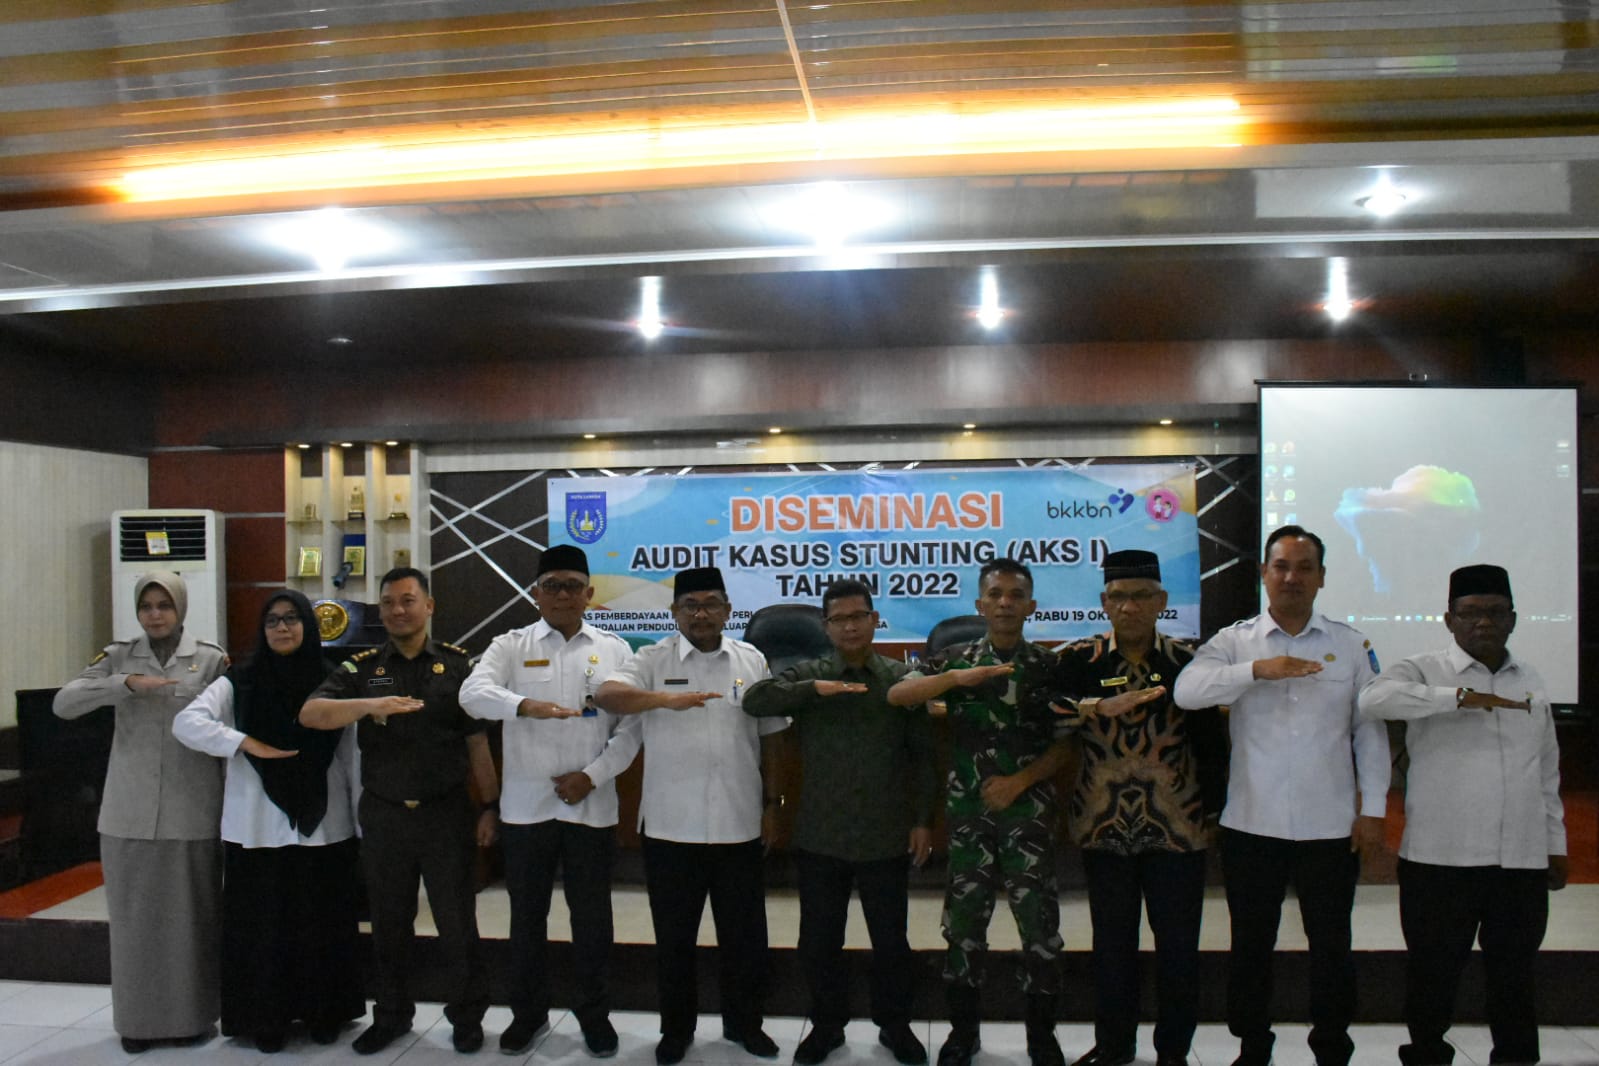 Pemko Langsa melalui Dinas DP3A Kota Langsa menggelar acara Diseminasi Audit Kasus Stunting Pertama Kota Langsa Tahun 2022